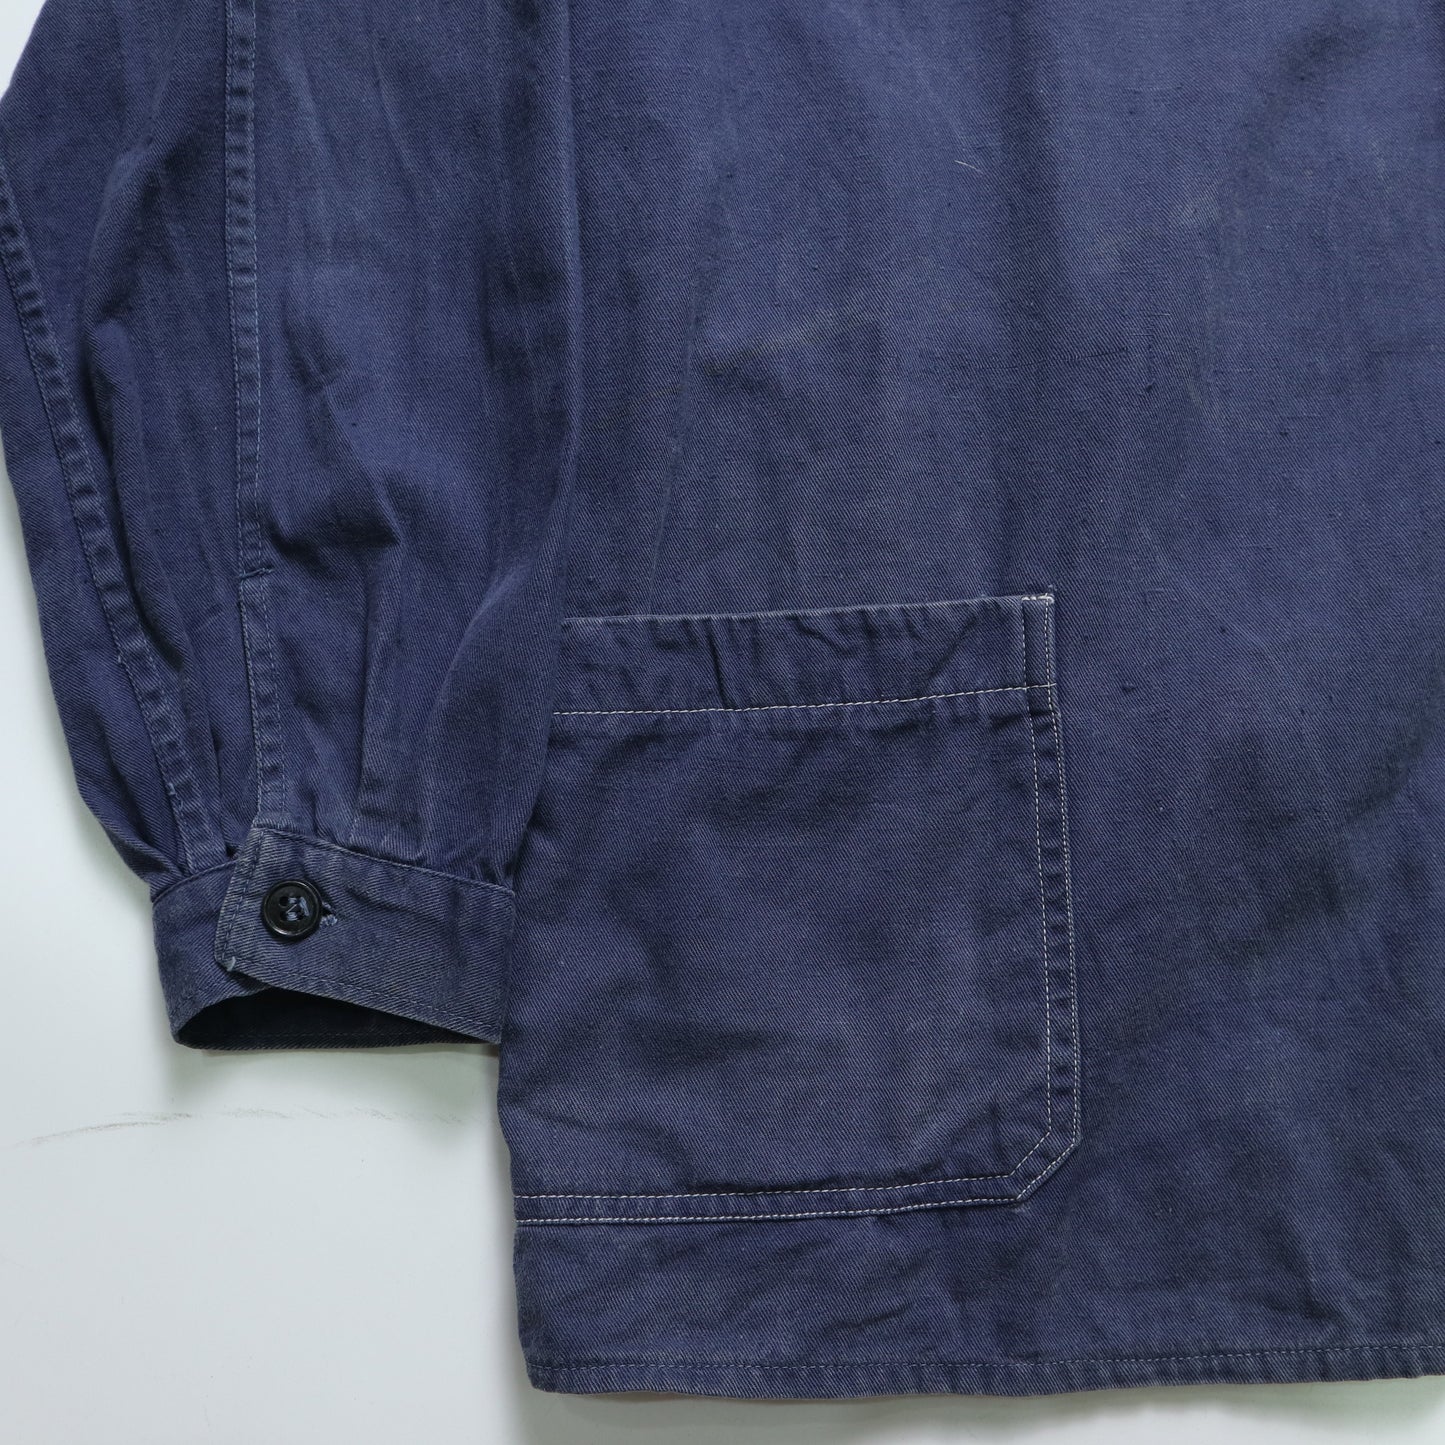 1980s Lotus 藍色法國工裝外套